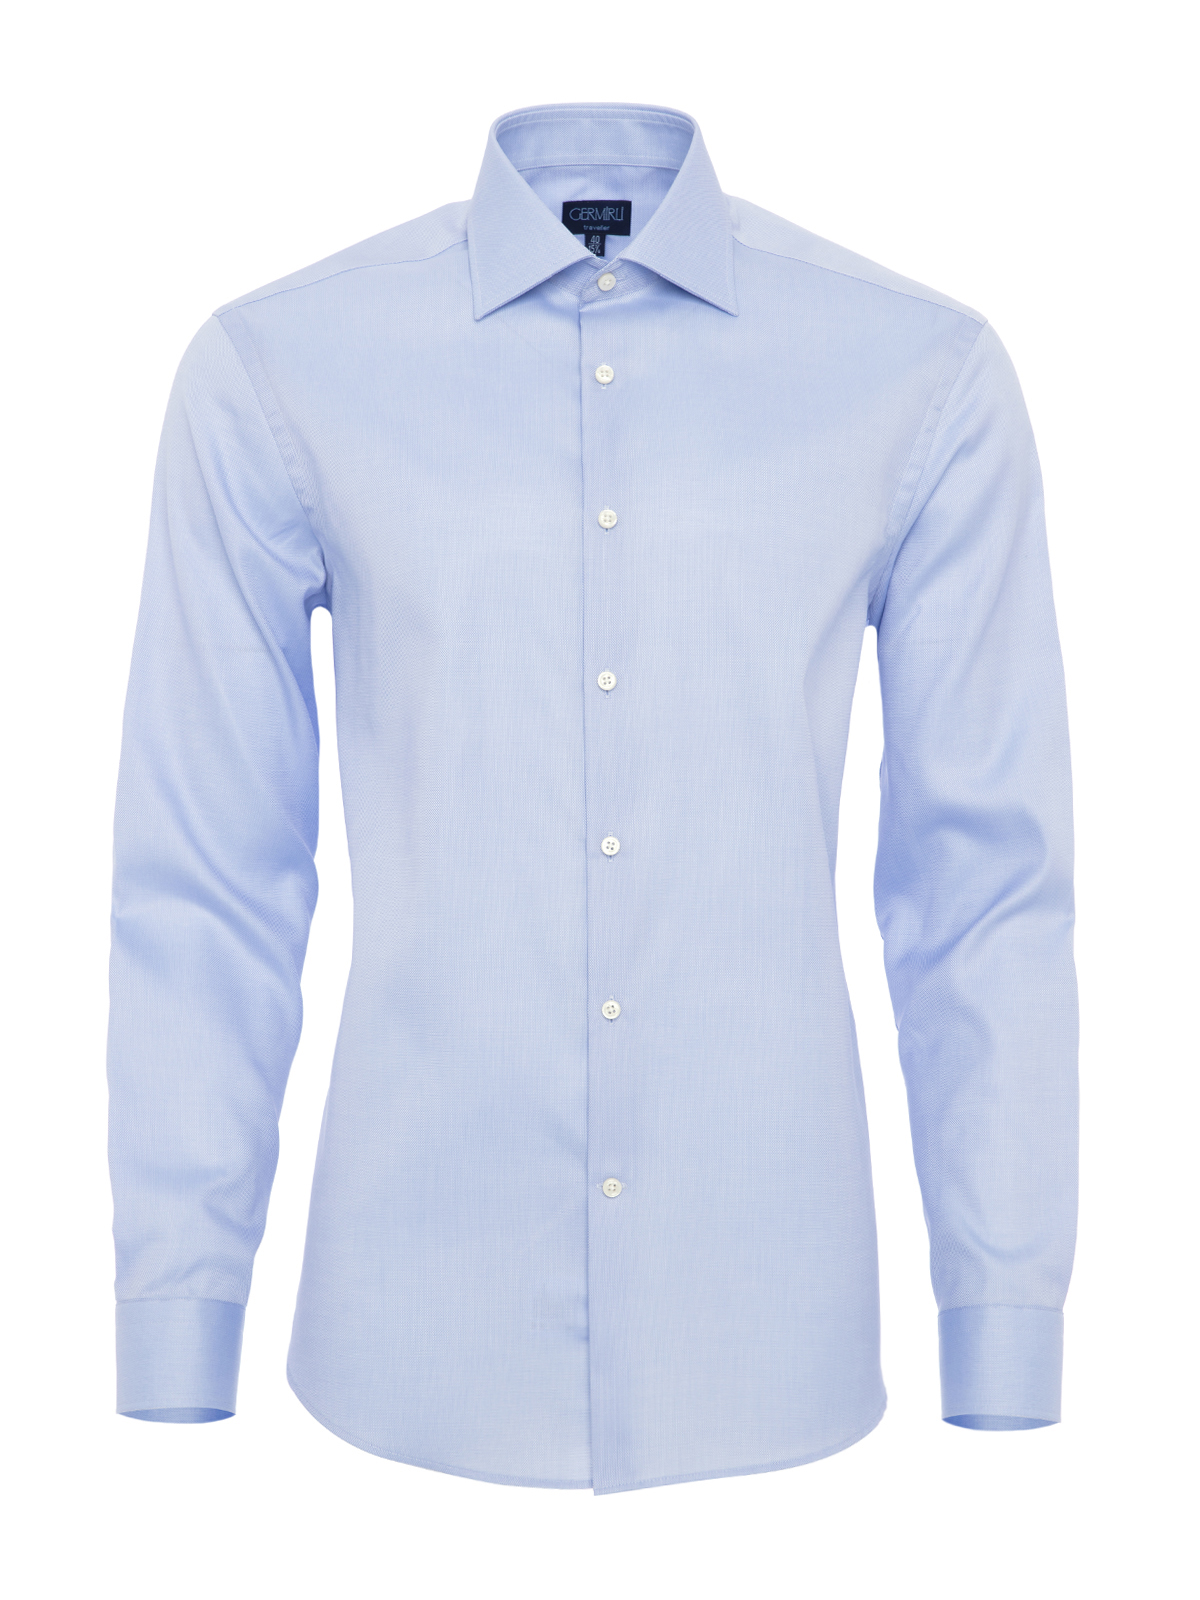 Germirli - Germirli Non Iron K.Mavi Oxford Klasik Yaka Tailor Fit Journey Gömlek